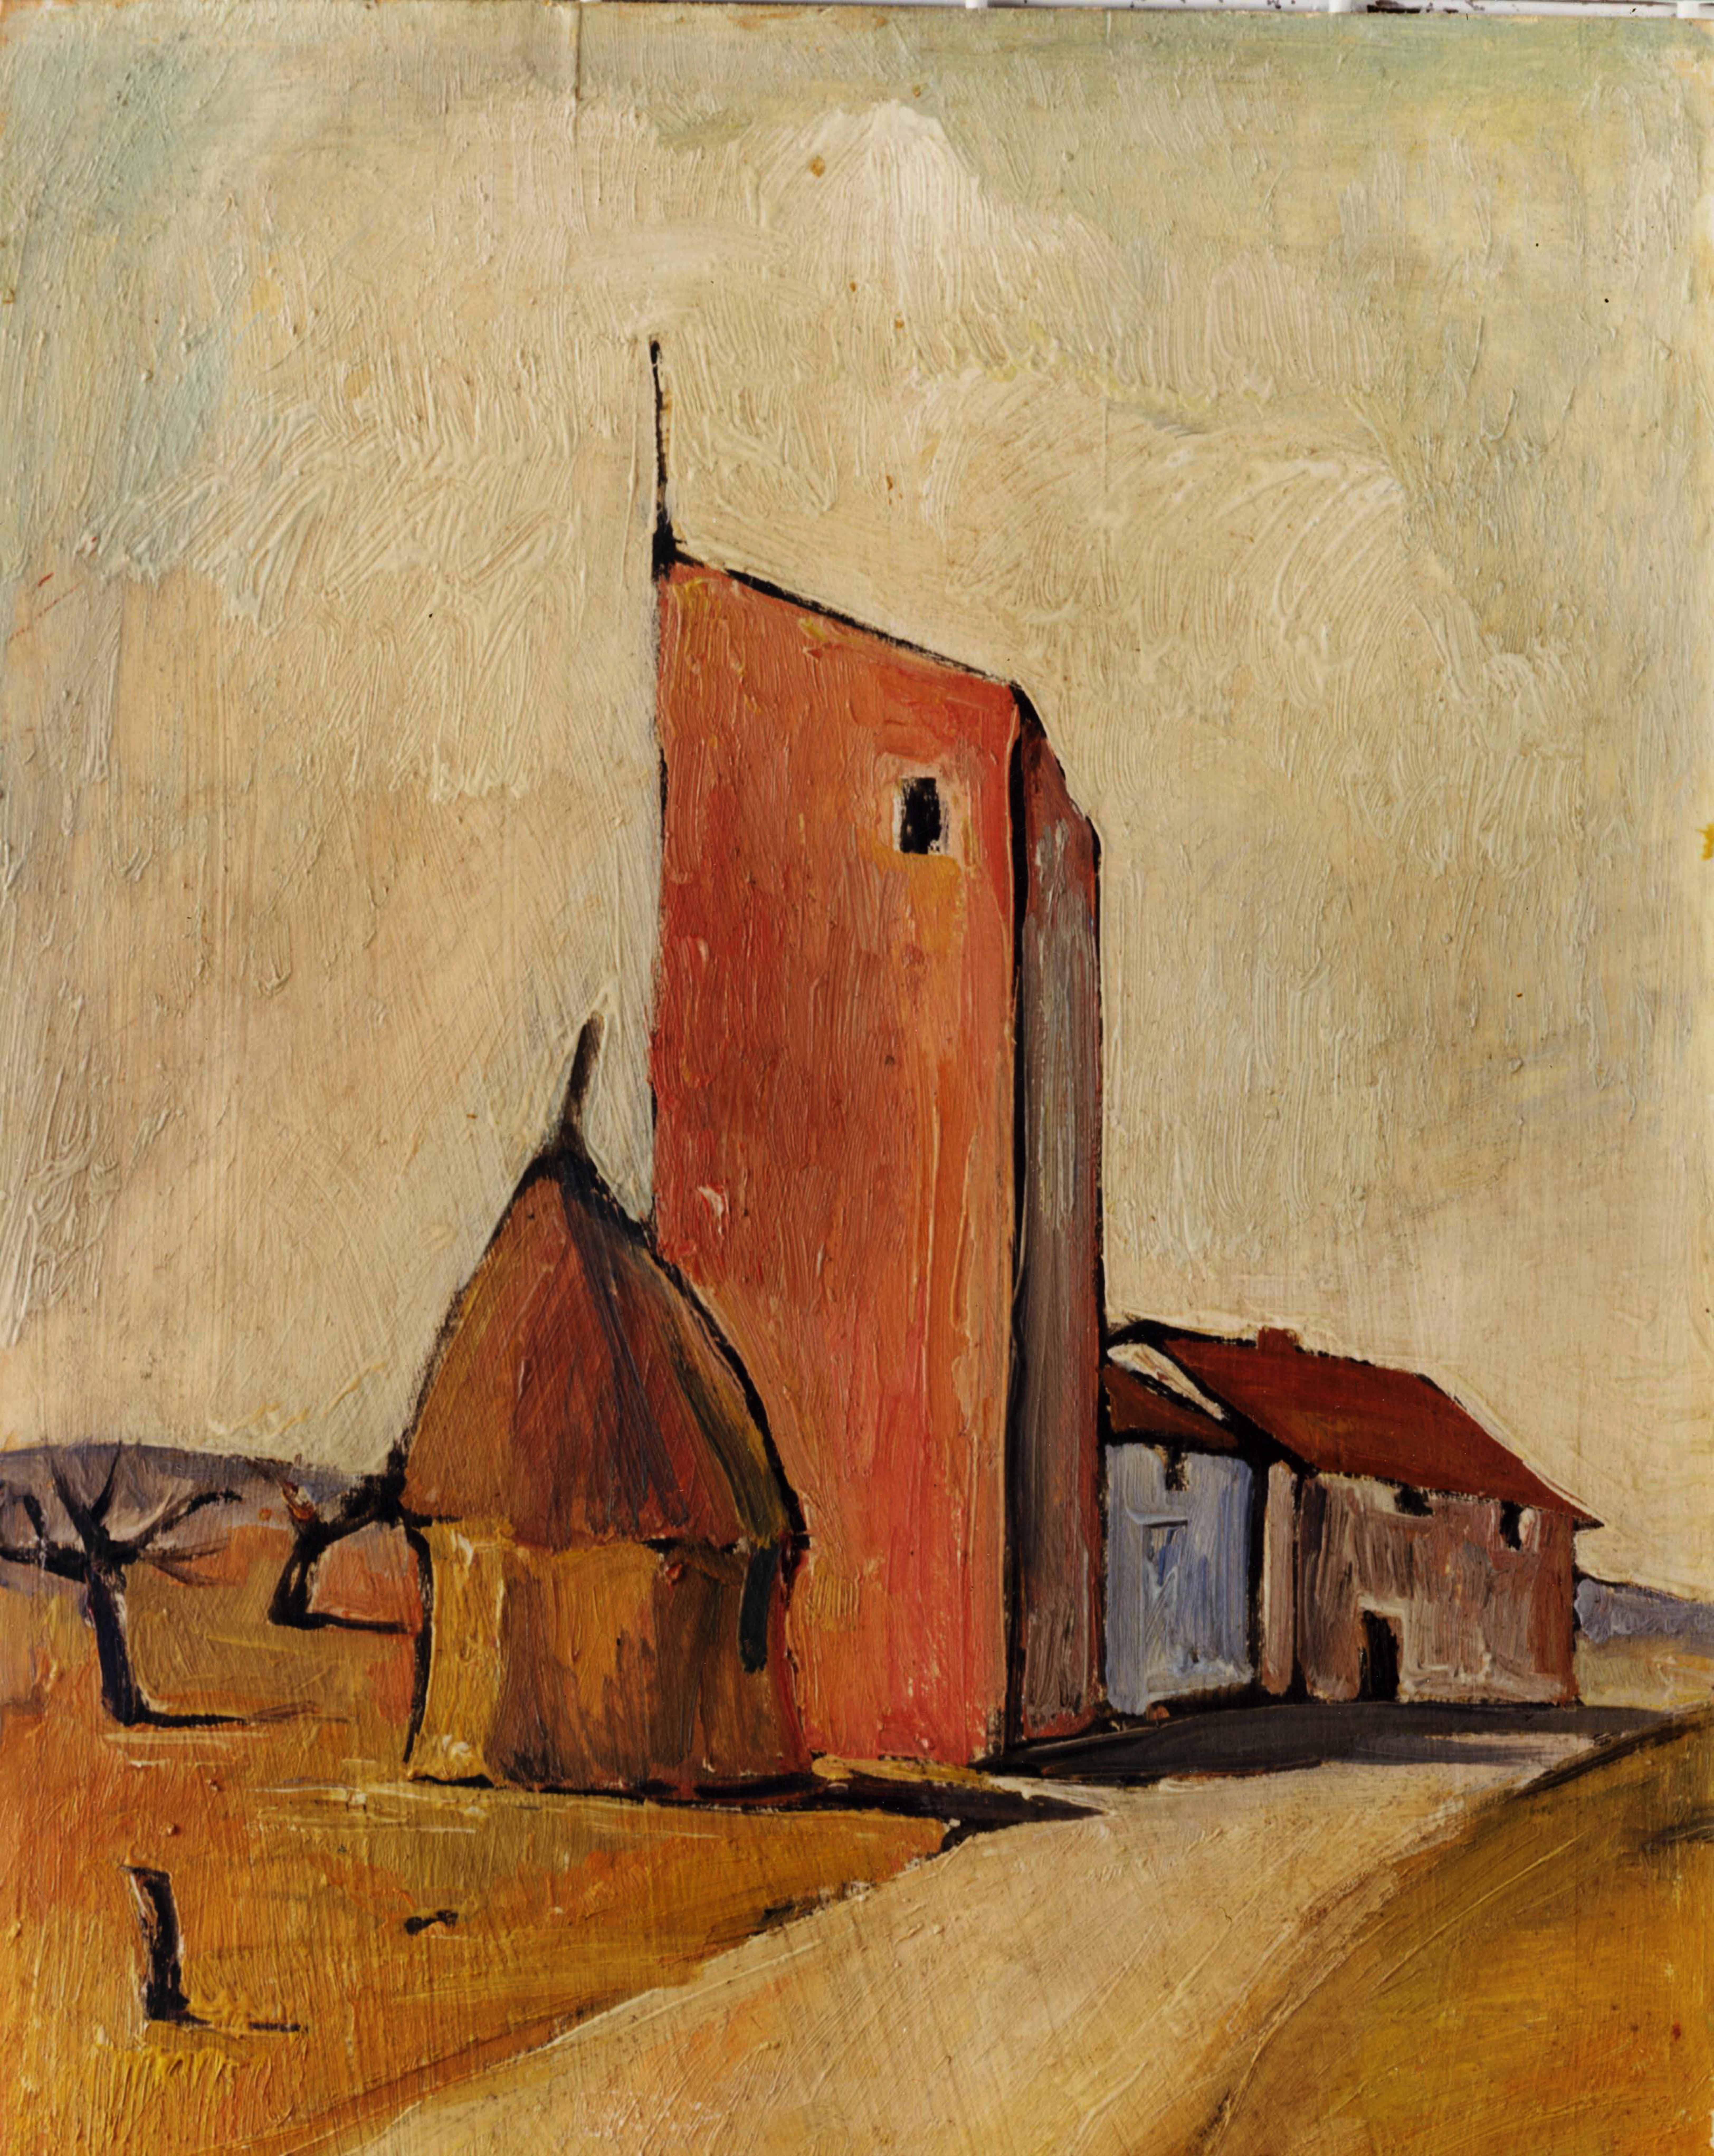 Giorgio Maddoli, "La Torre", 1953